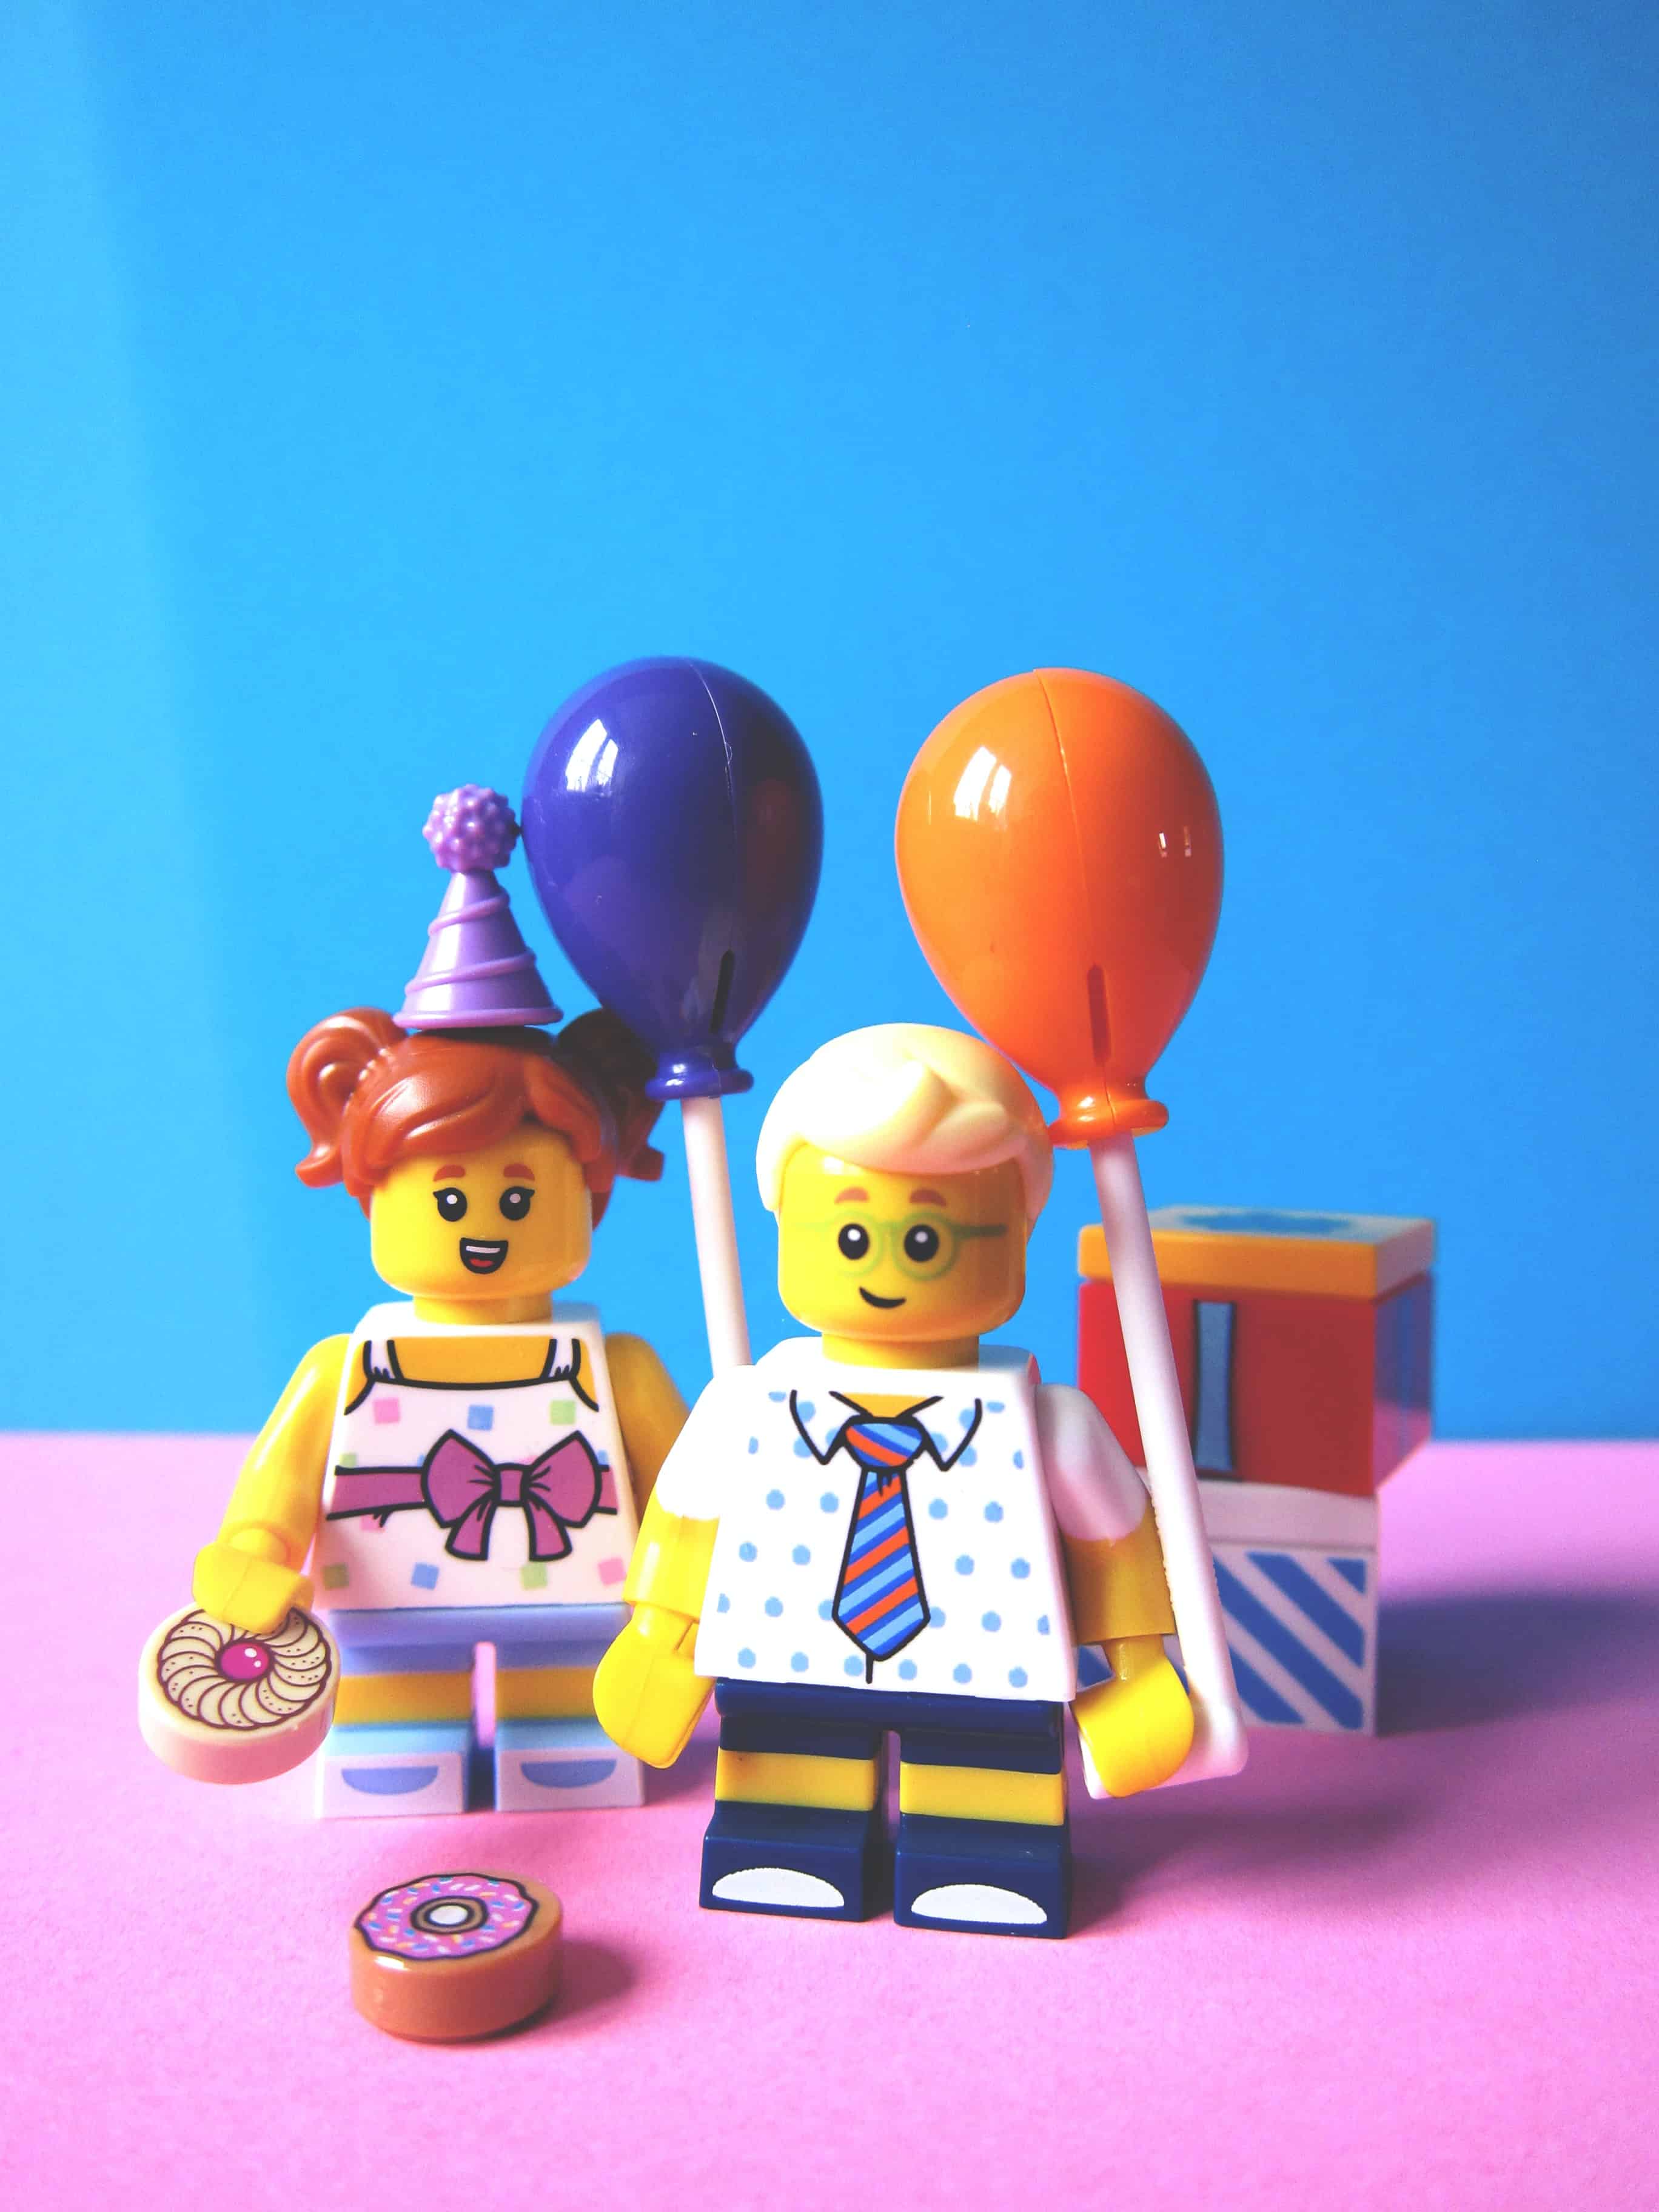 Come organizzare una festa a tema LEGO